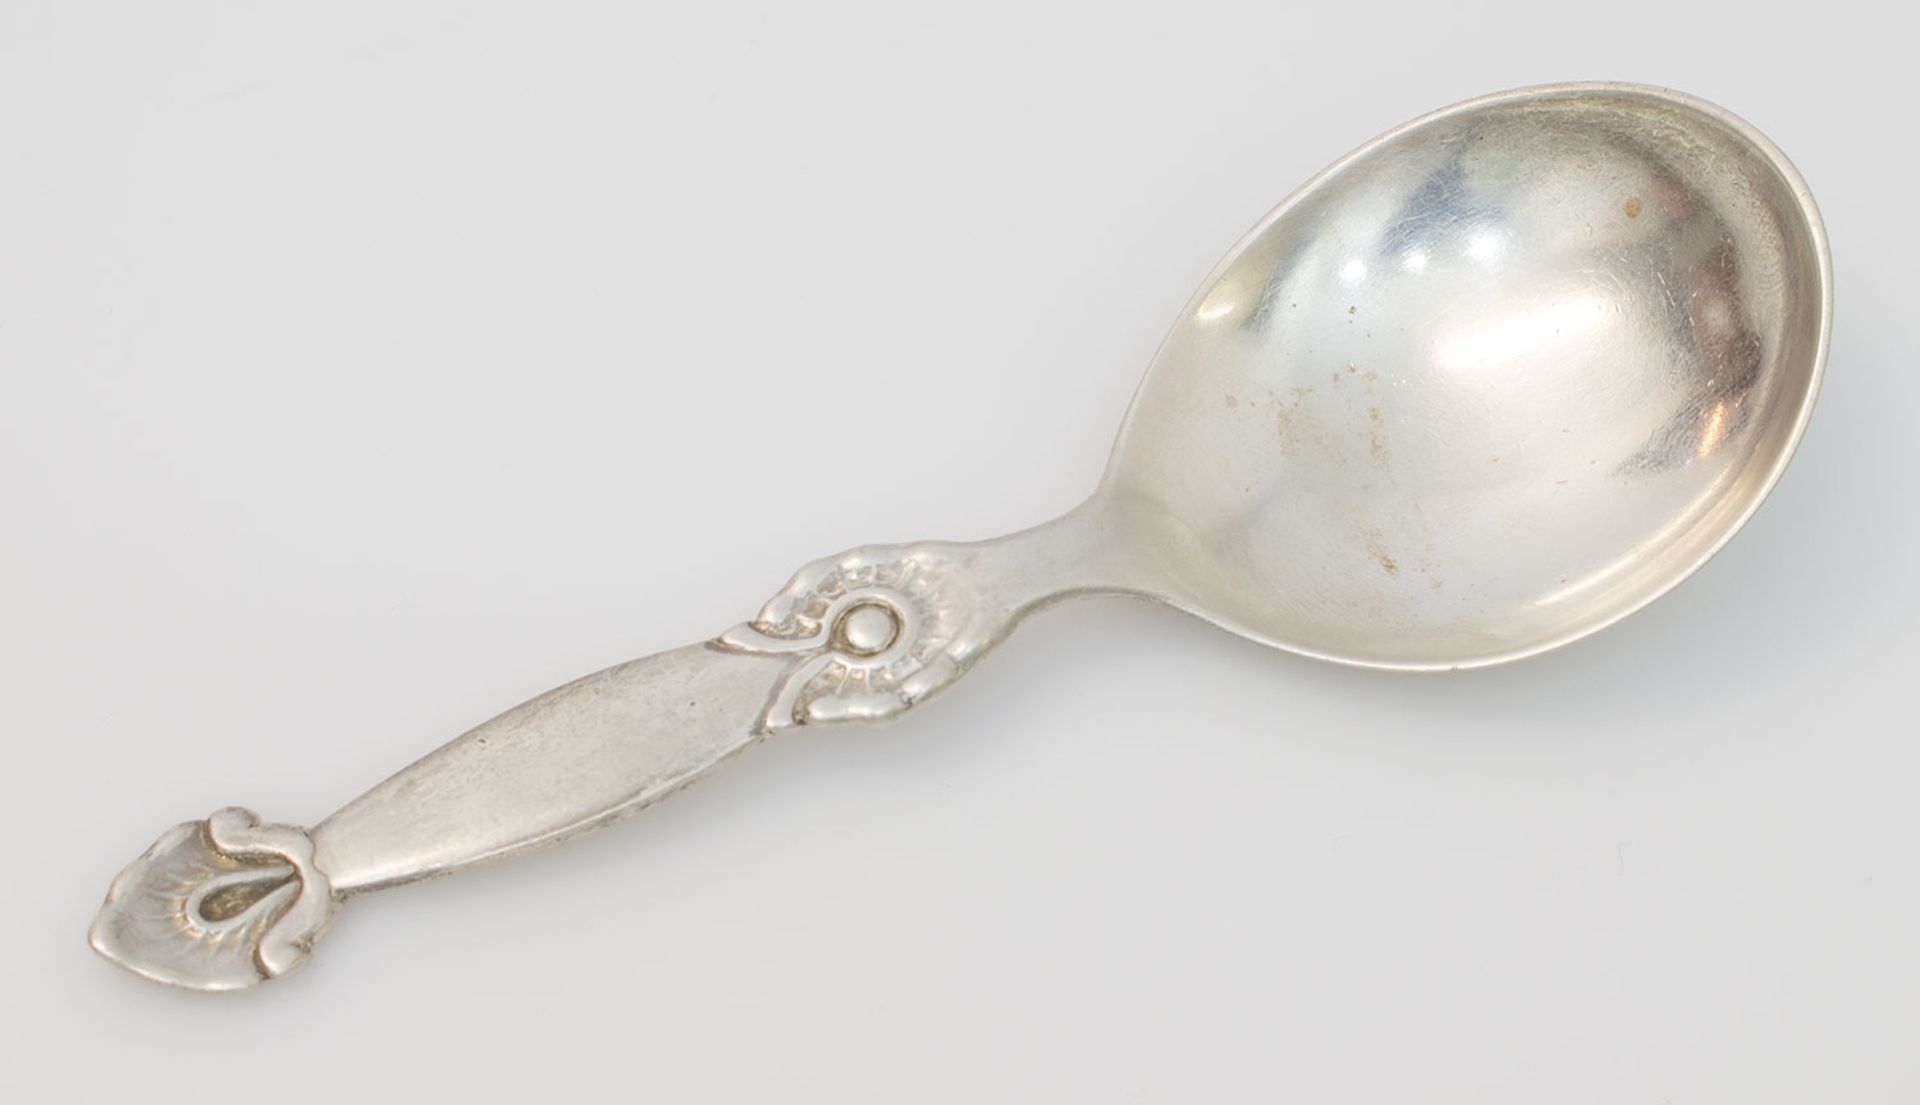 Tauflöffel Dänemark 826er Silber, Jahresangabe 1930, typisches dänisches Design, Gravur Julen